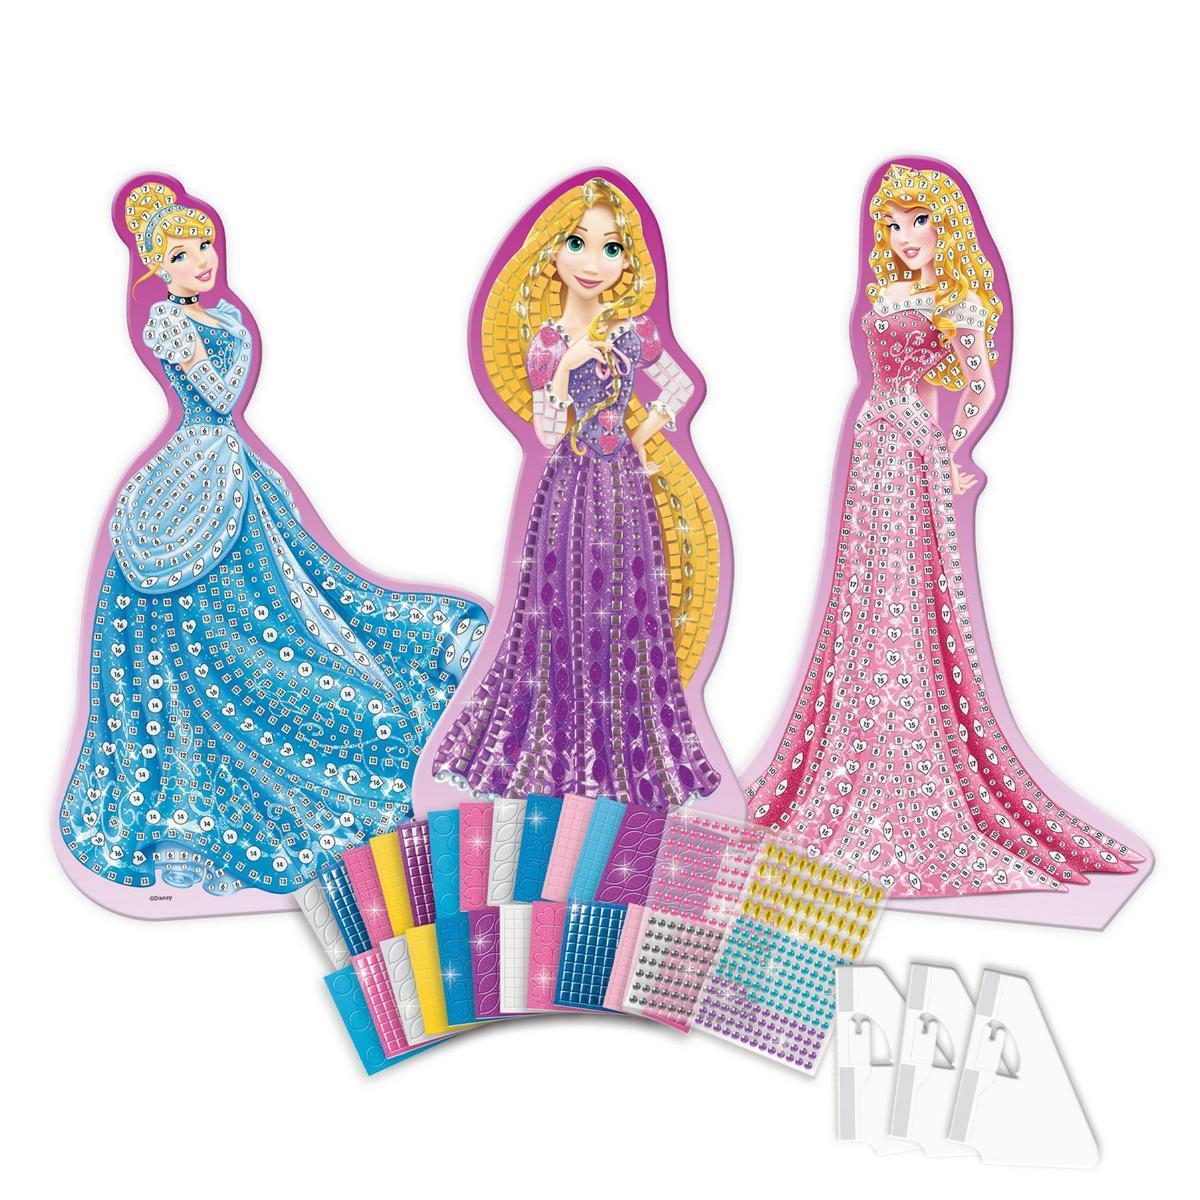 Mosaïque Princesses Disney - Plastique - H 50 cm - Bleu, rose et mauve